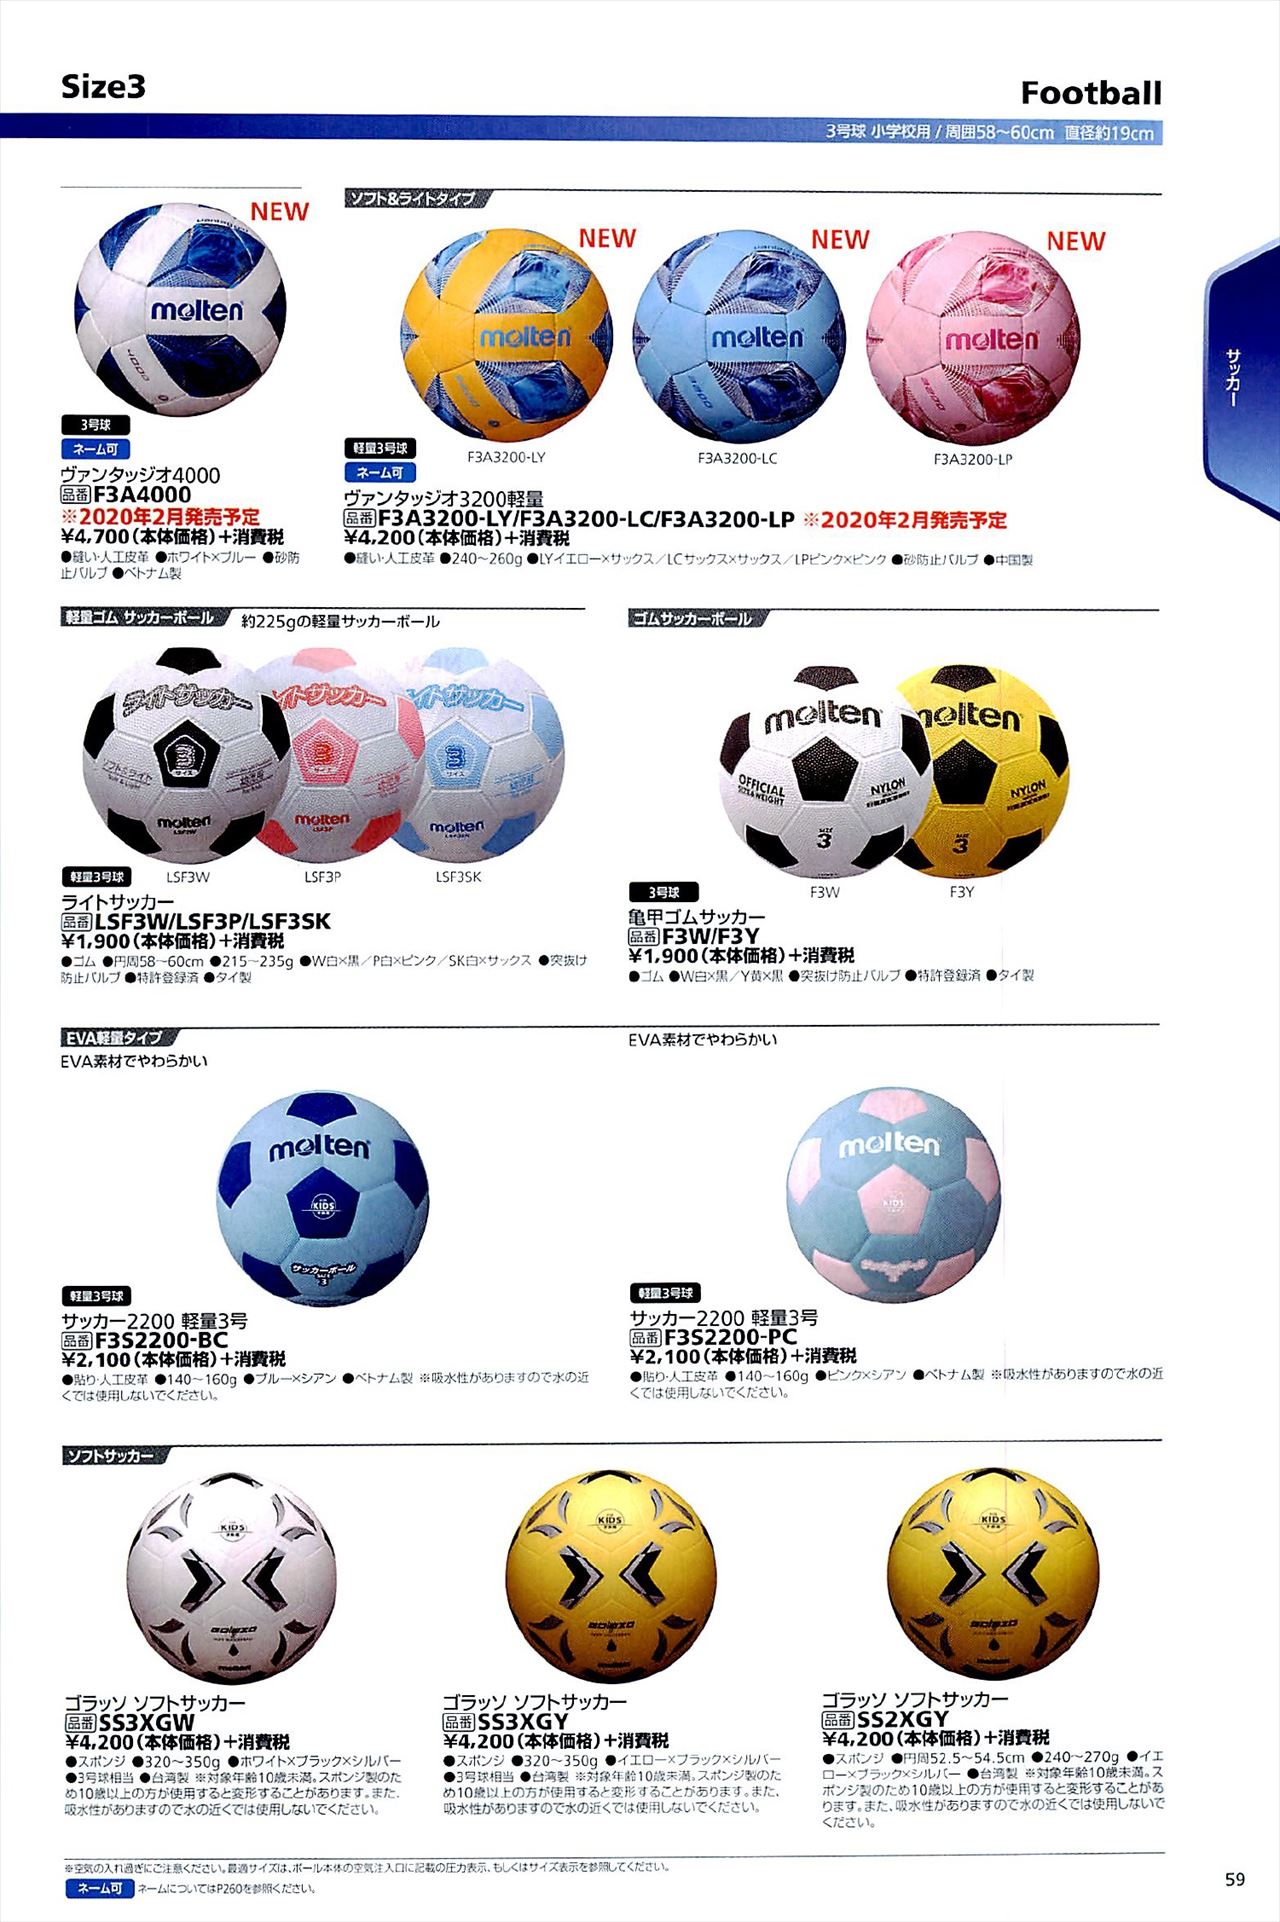 サッカーボール3号球は モルテンカタログ の ページ59 に掲載されています スポーツメーカーカタログ 目次ページ